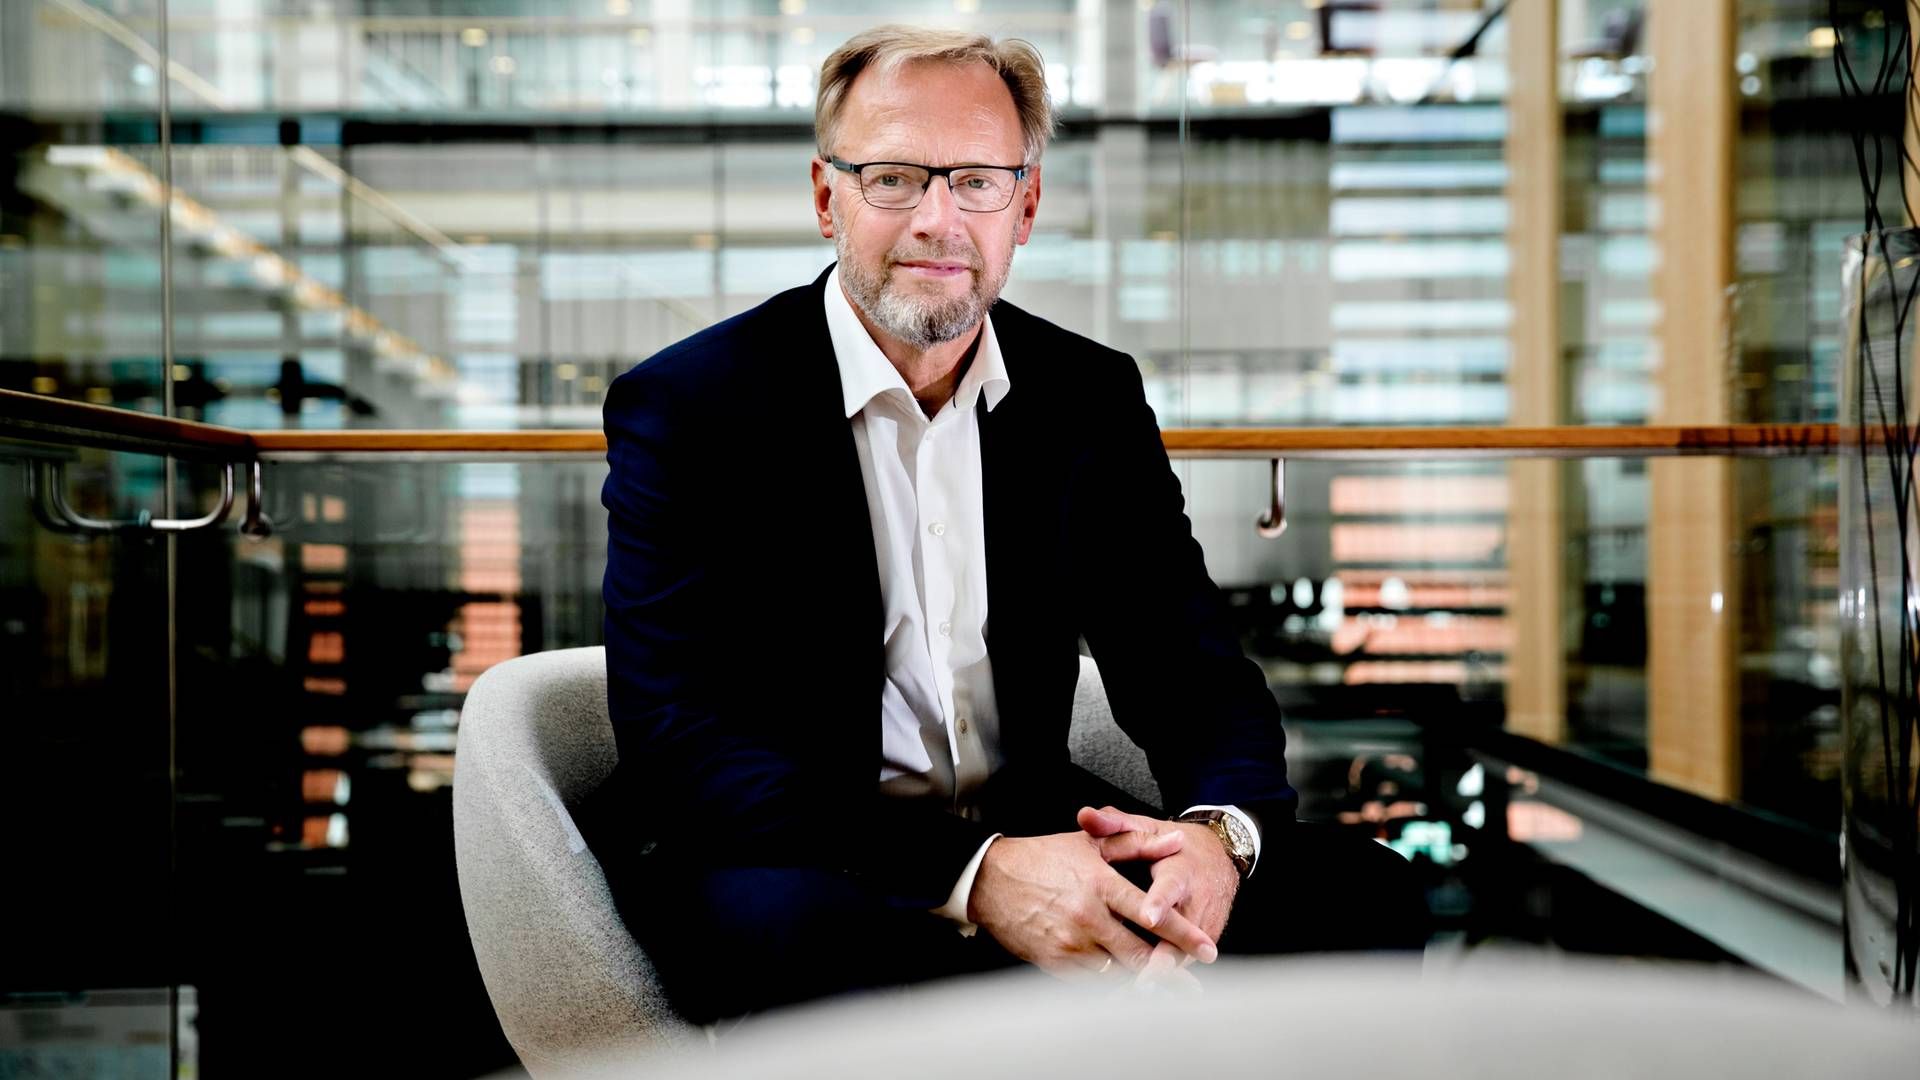 Jyske Banks adm. direktør Anders Dams simple pressestrategi klarer ikke mødet med virkeligheden, mener Berlingskes nyhedschef. | Foto: Jyske Bank/pr